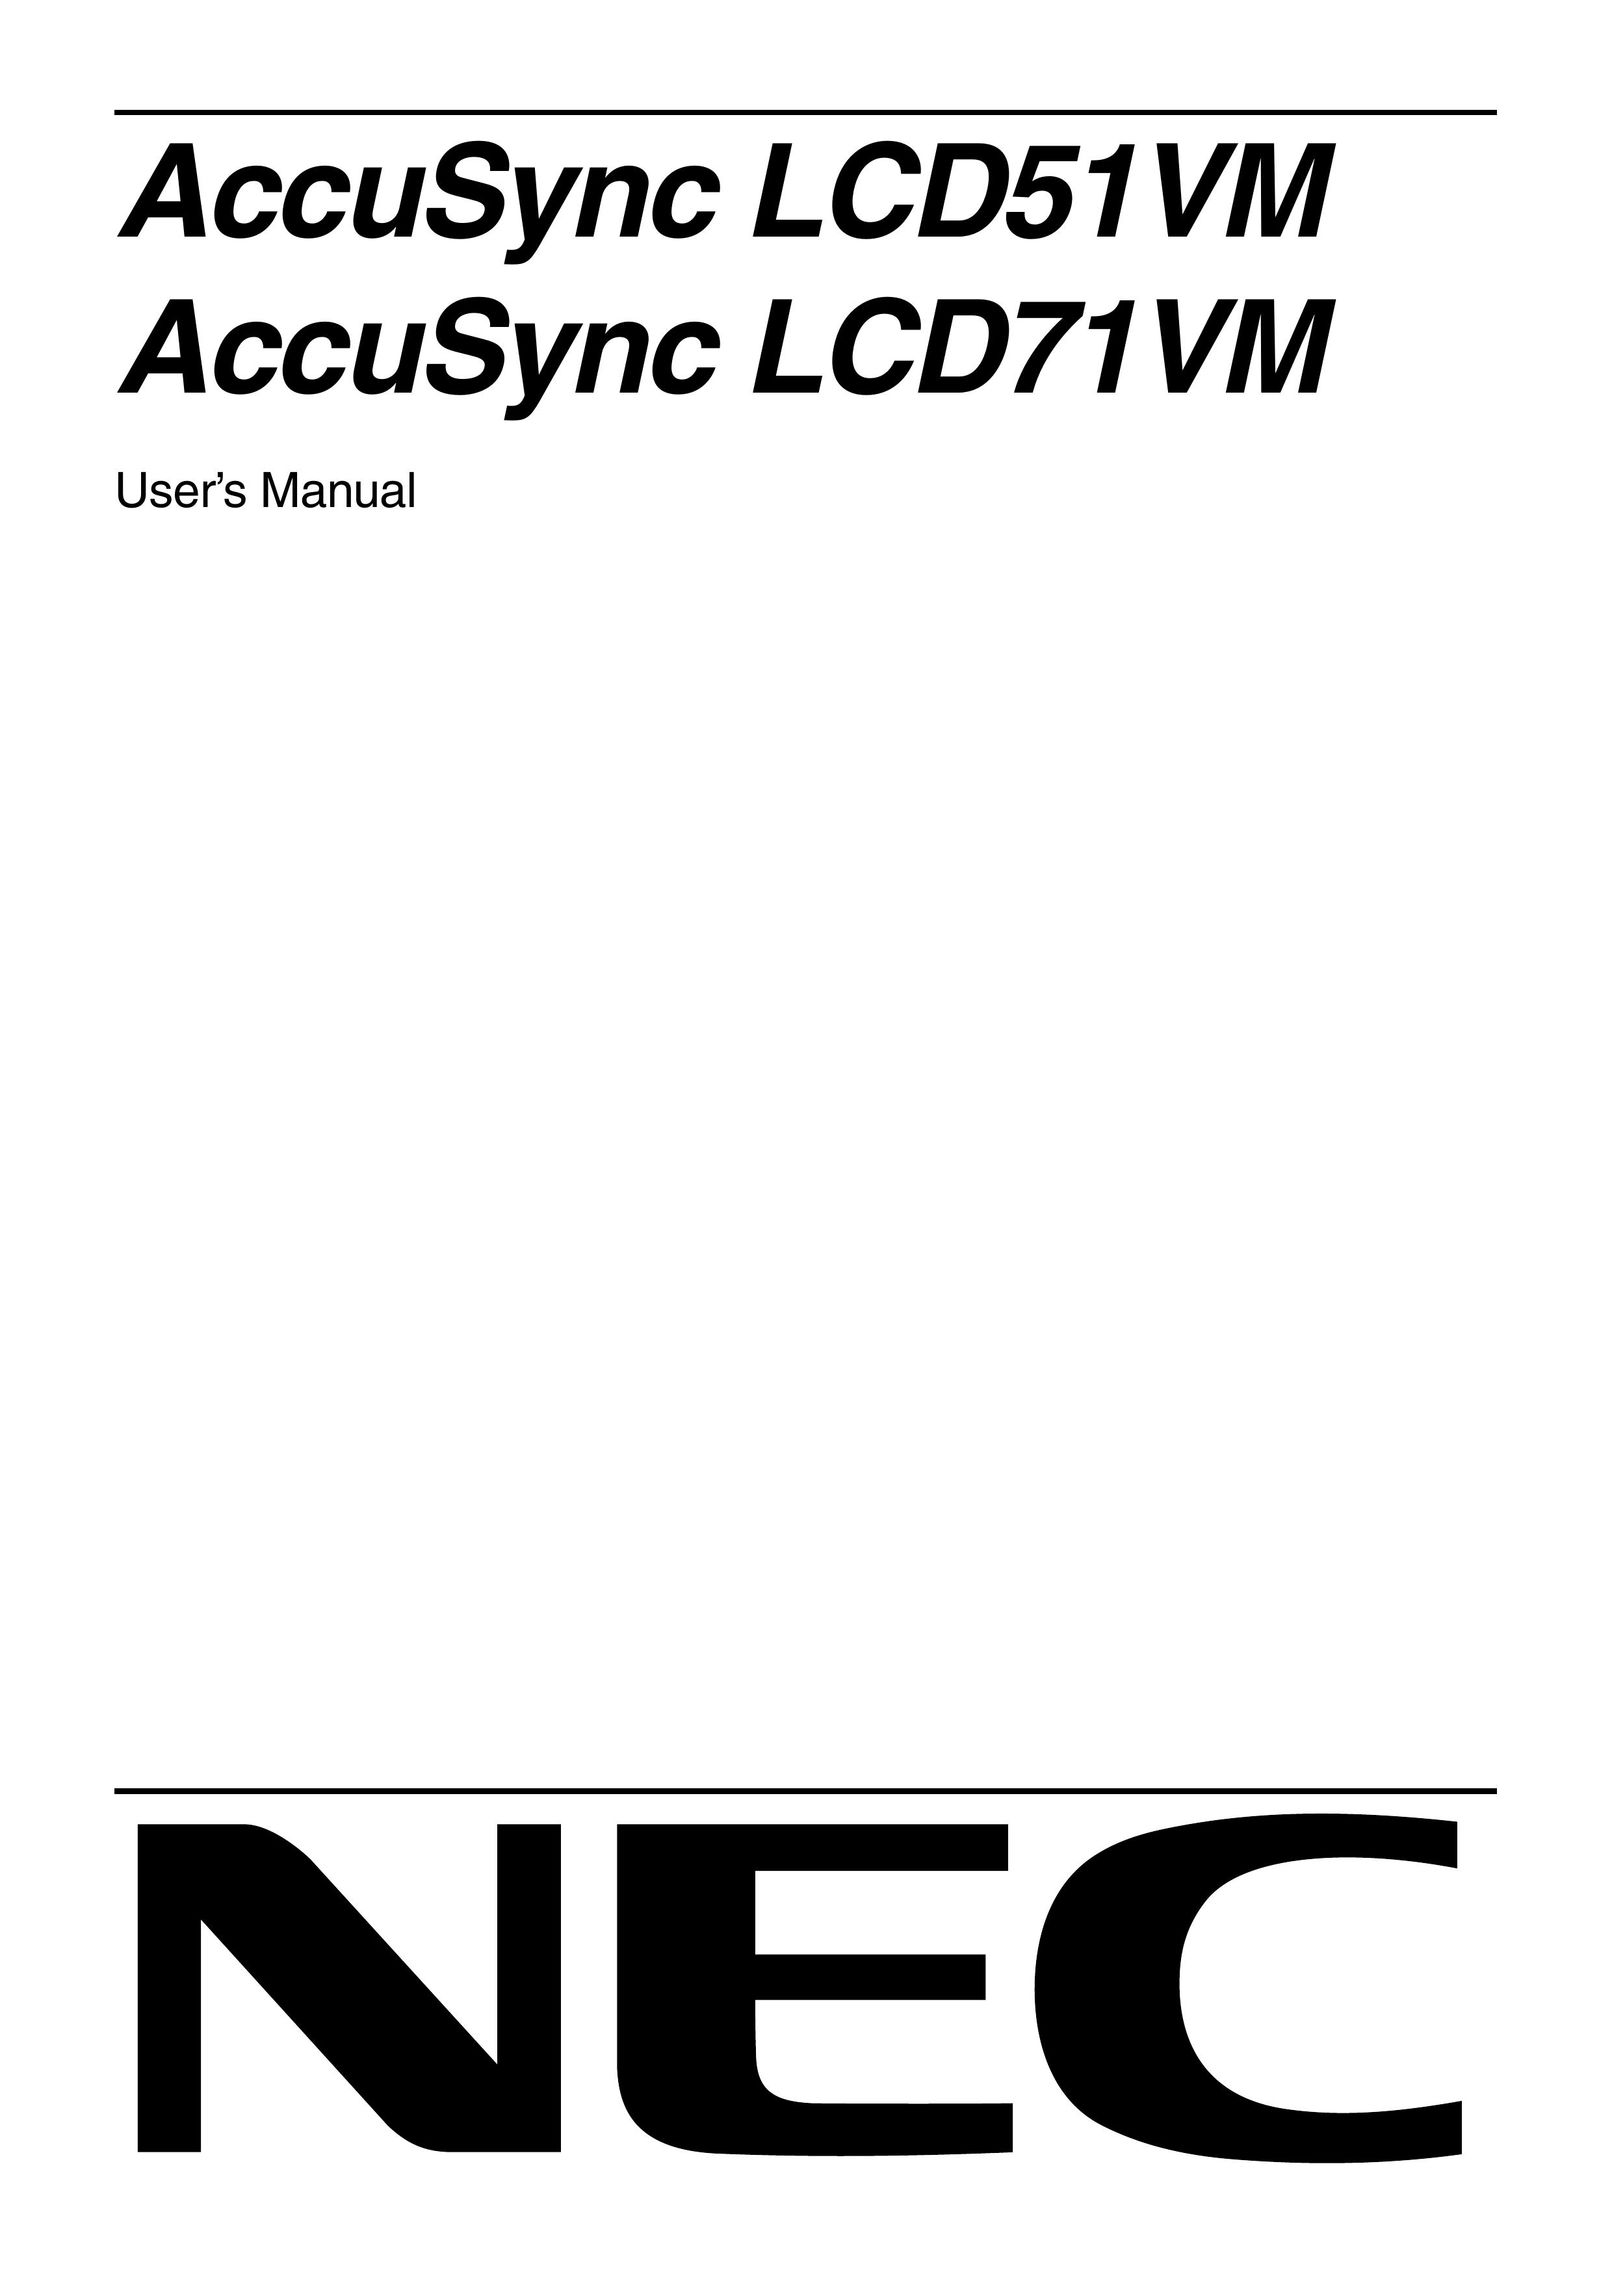 Mitsubishi Electronics LCD51VM, LCD71VM Computer Monitor User Manual